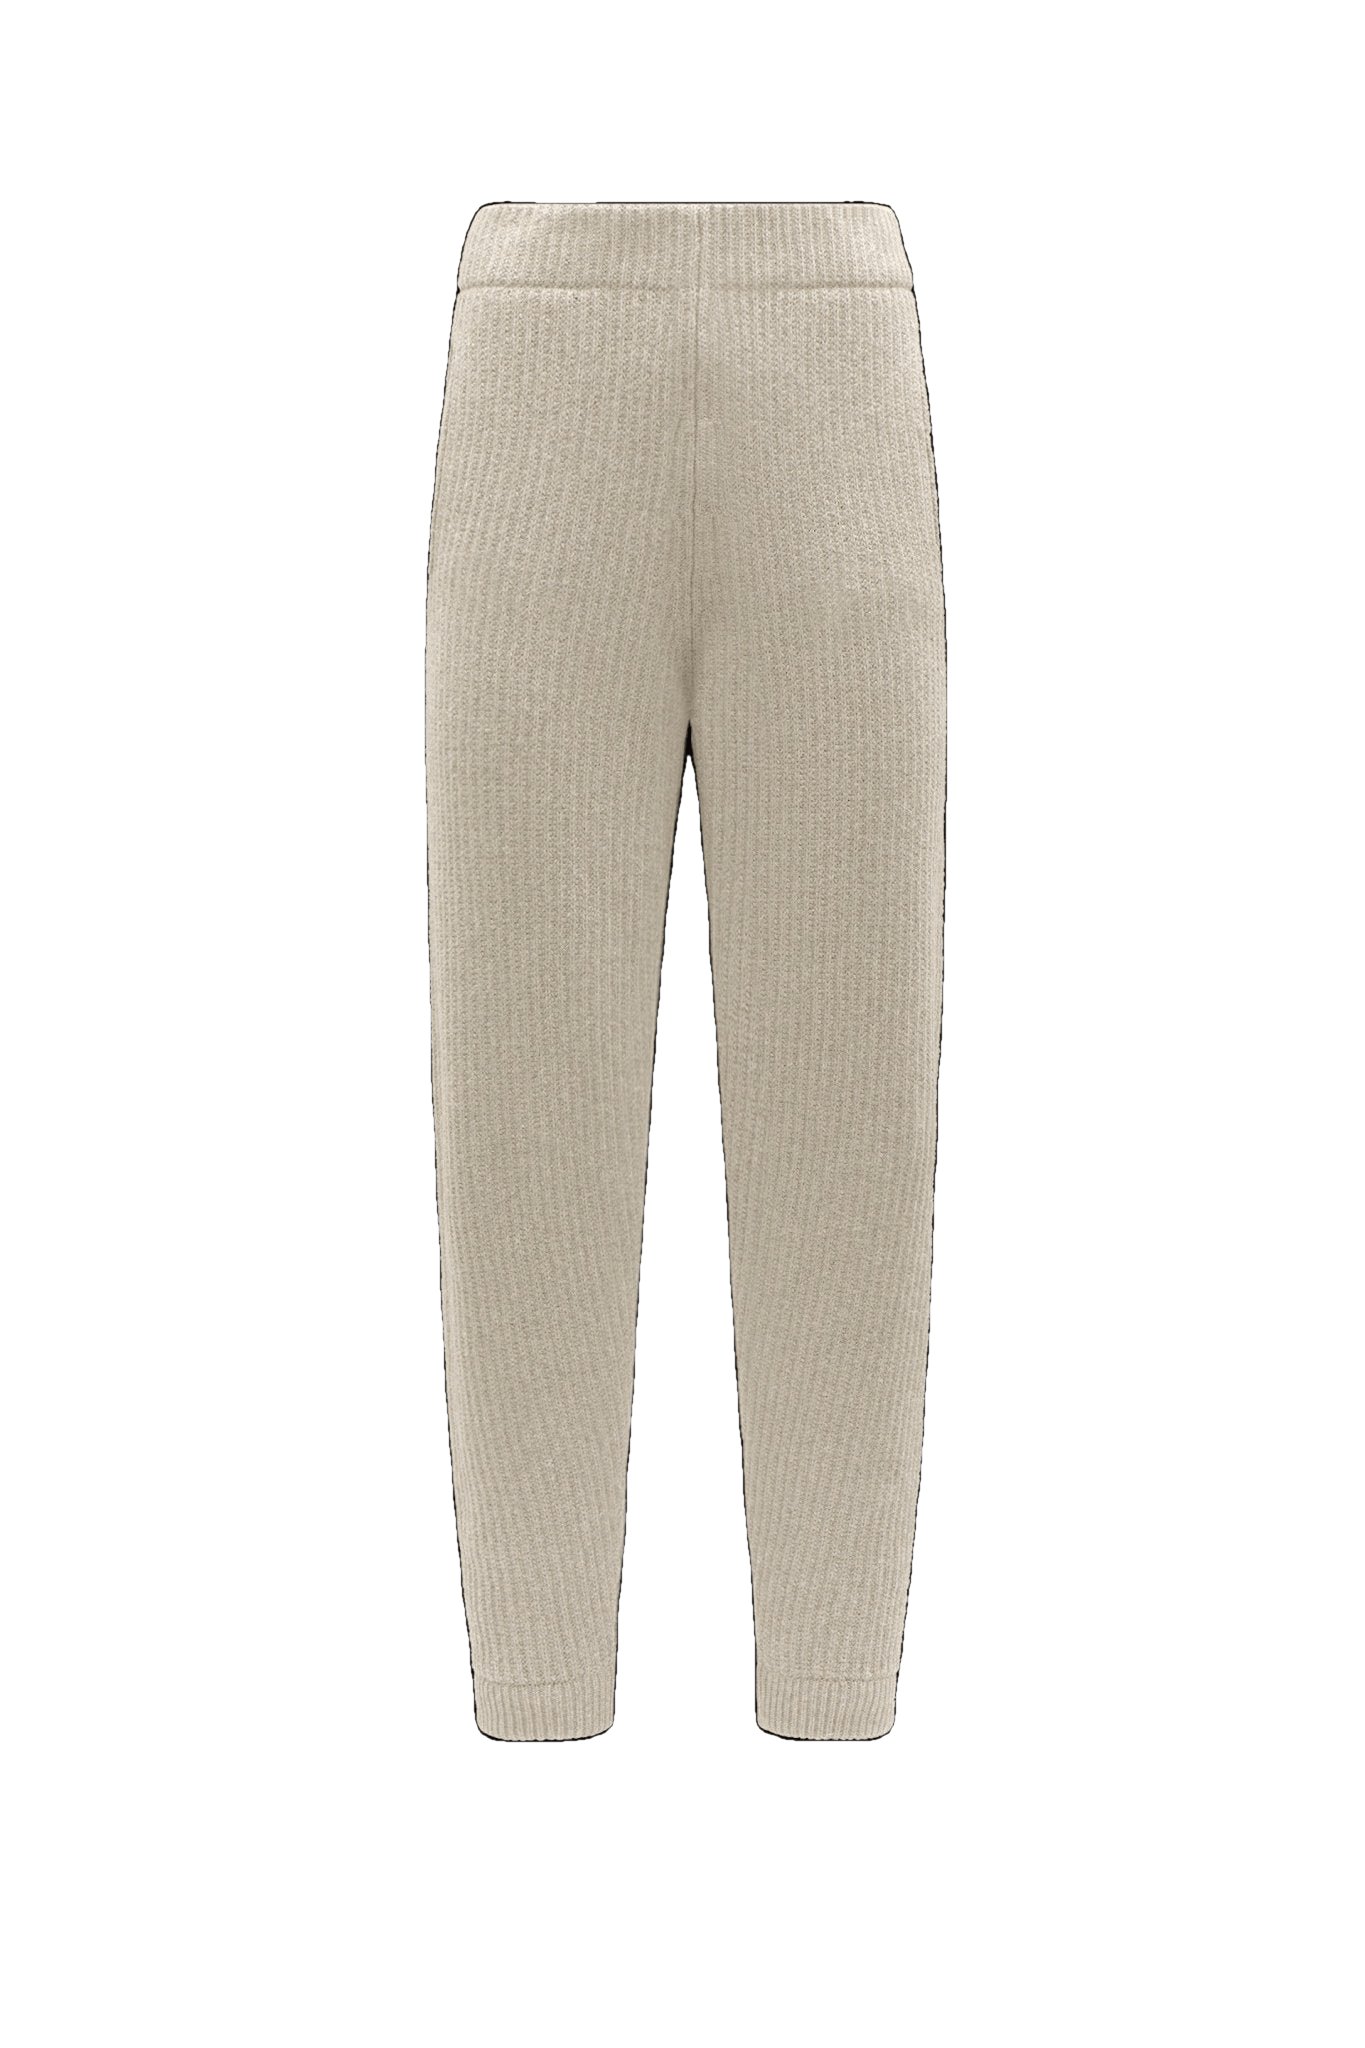 Moncler Genius - Pantalon de survêtement maille - Lothaire boutiques